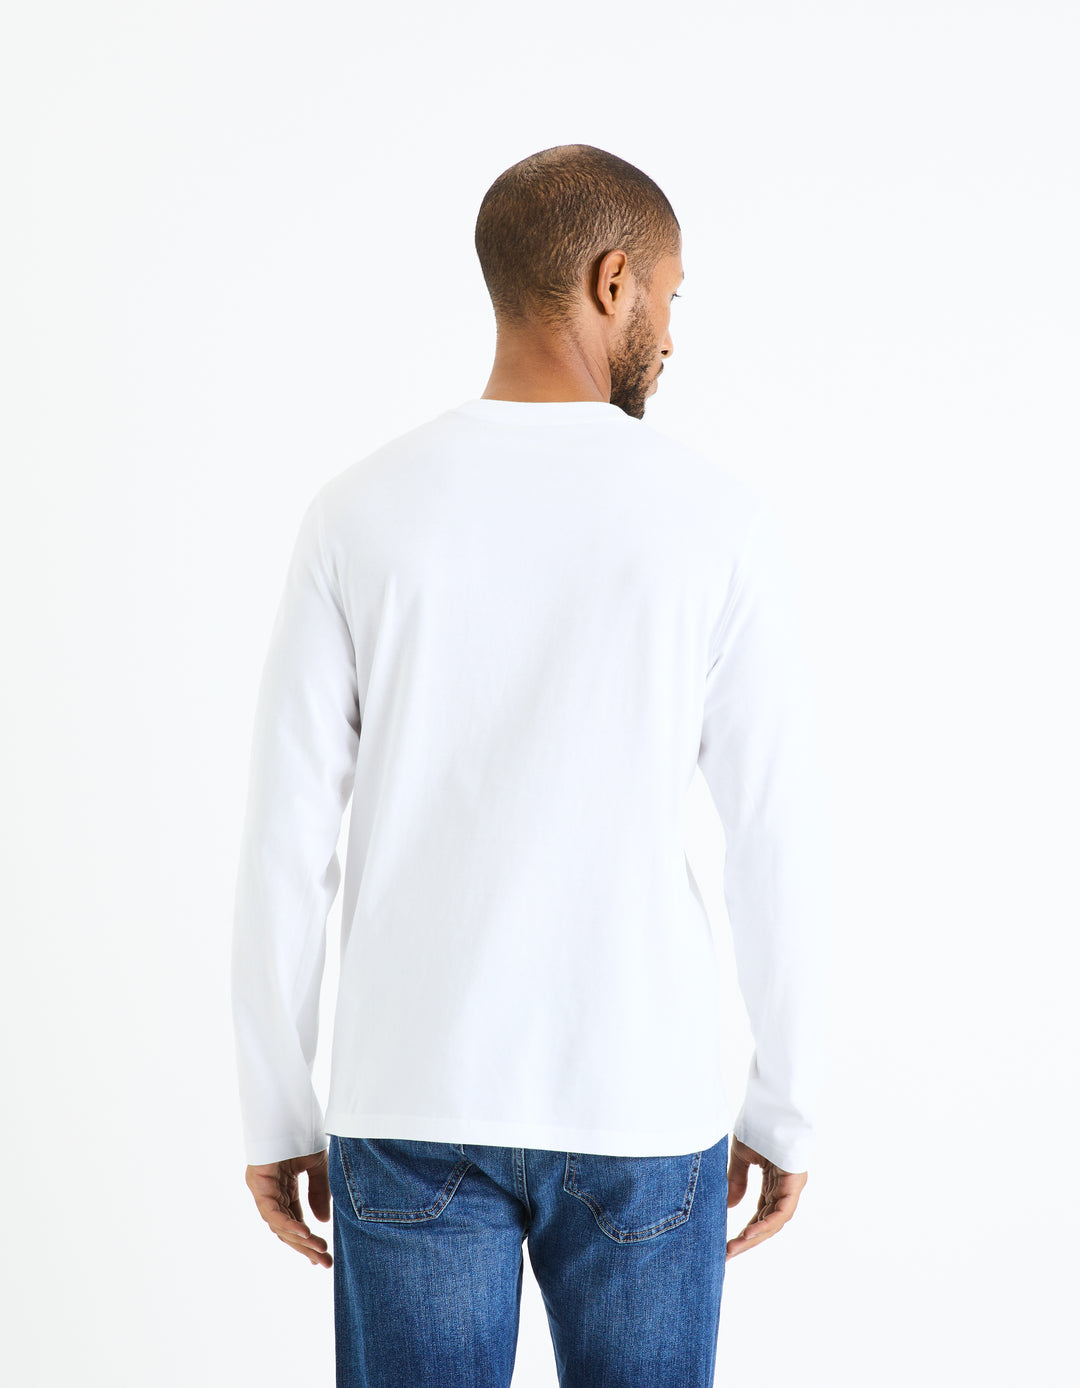 Unisex - Knitted - T-Shirt - Long sleeves - U / V / round neck